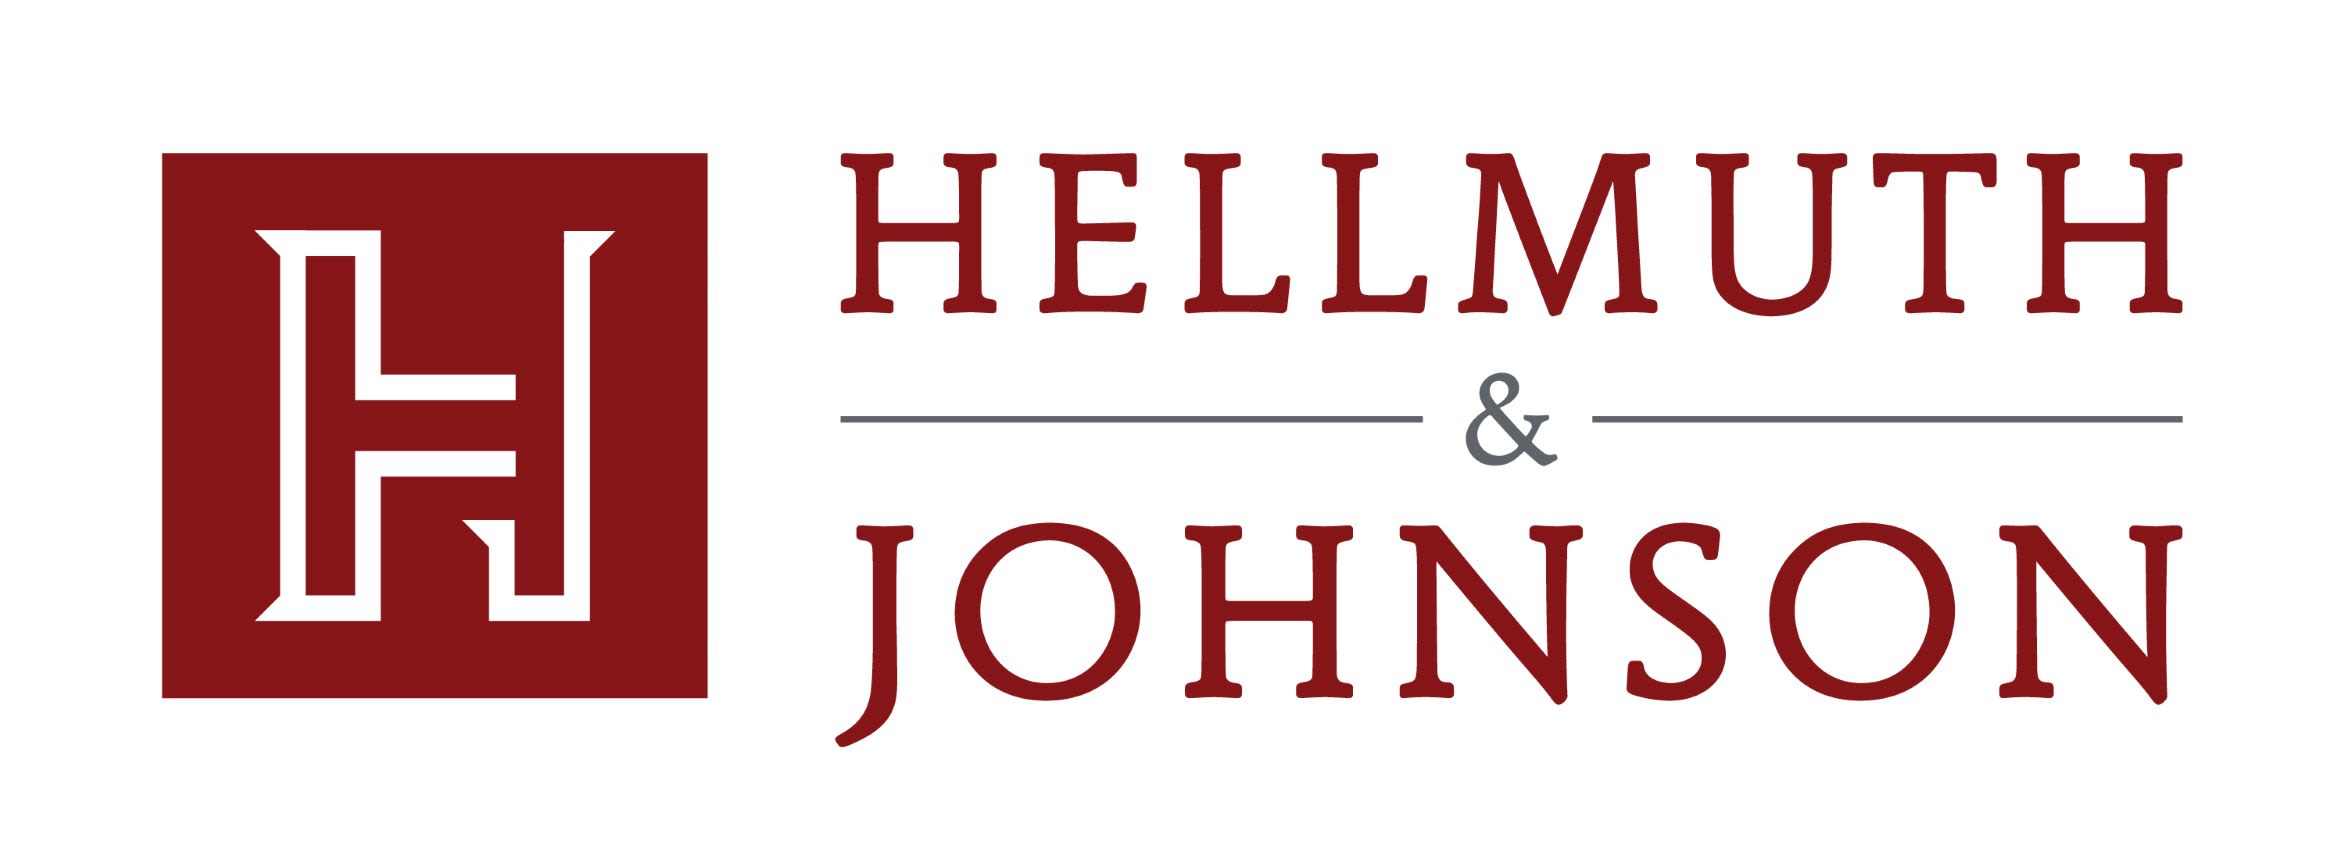 Hellmuth & Johnson law firm logo